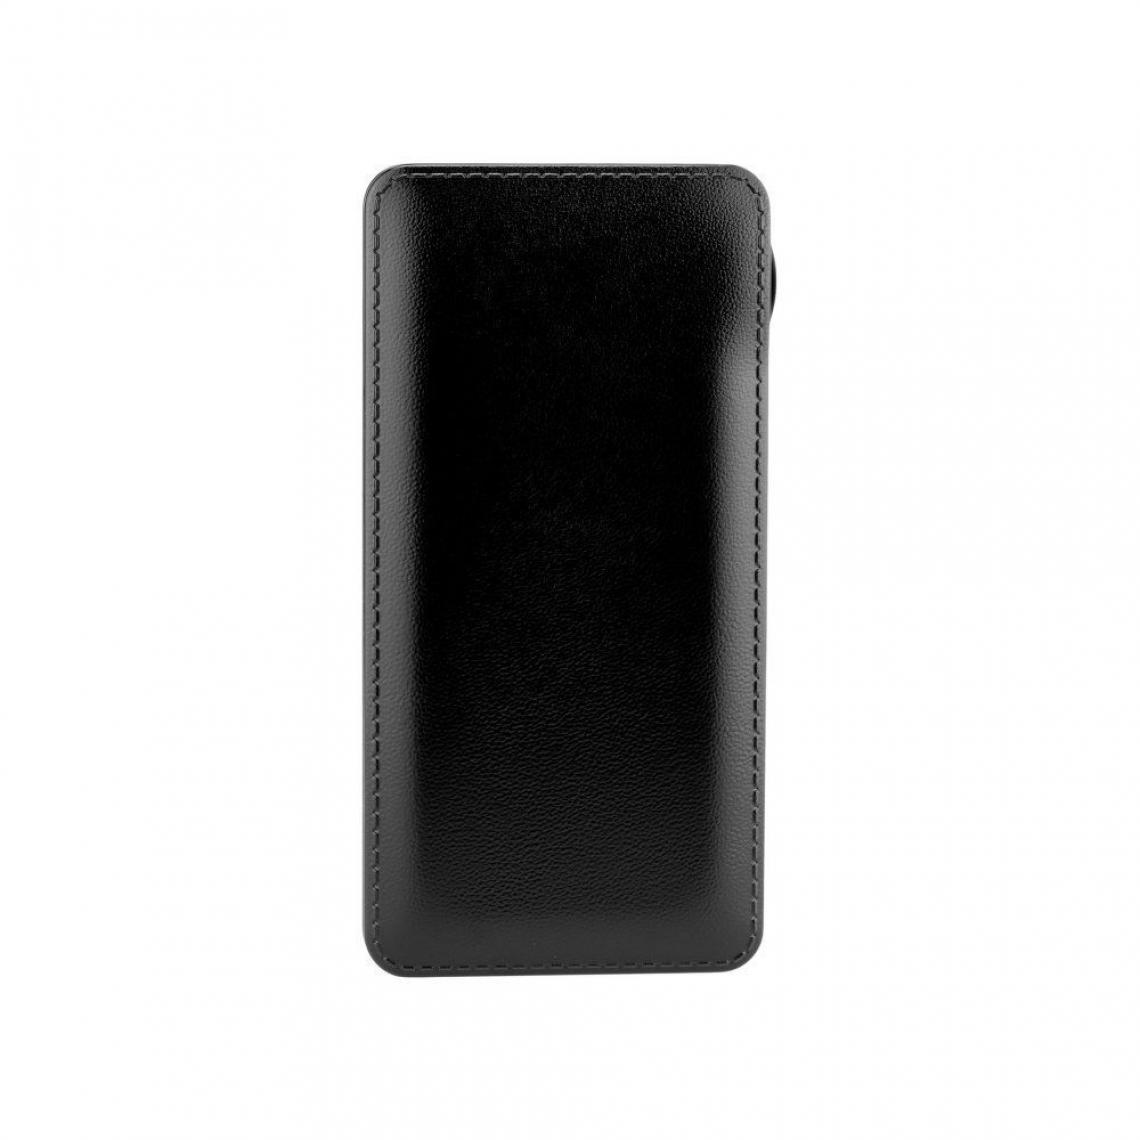 Ozzzo - Chargeur batterie externe 30000 mAh powerbank ozzzo noir pour SAMSUNG G388f Galaxy Xcover 3 - Autres accessoires smartphone